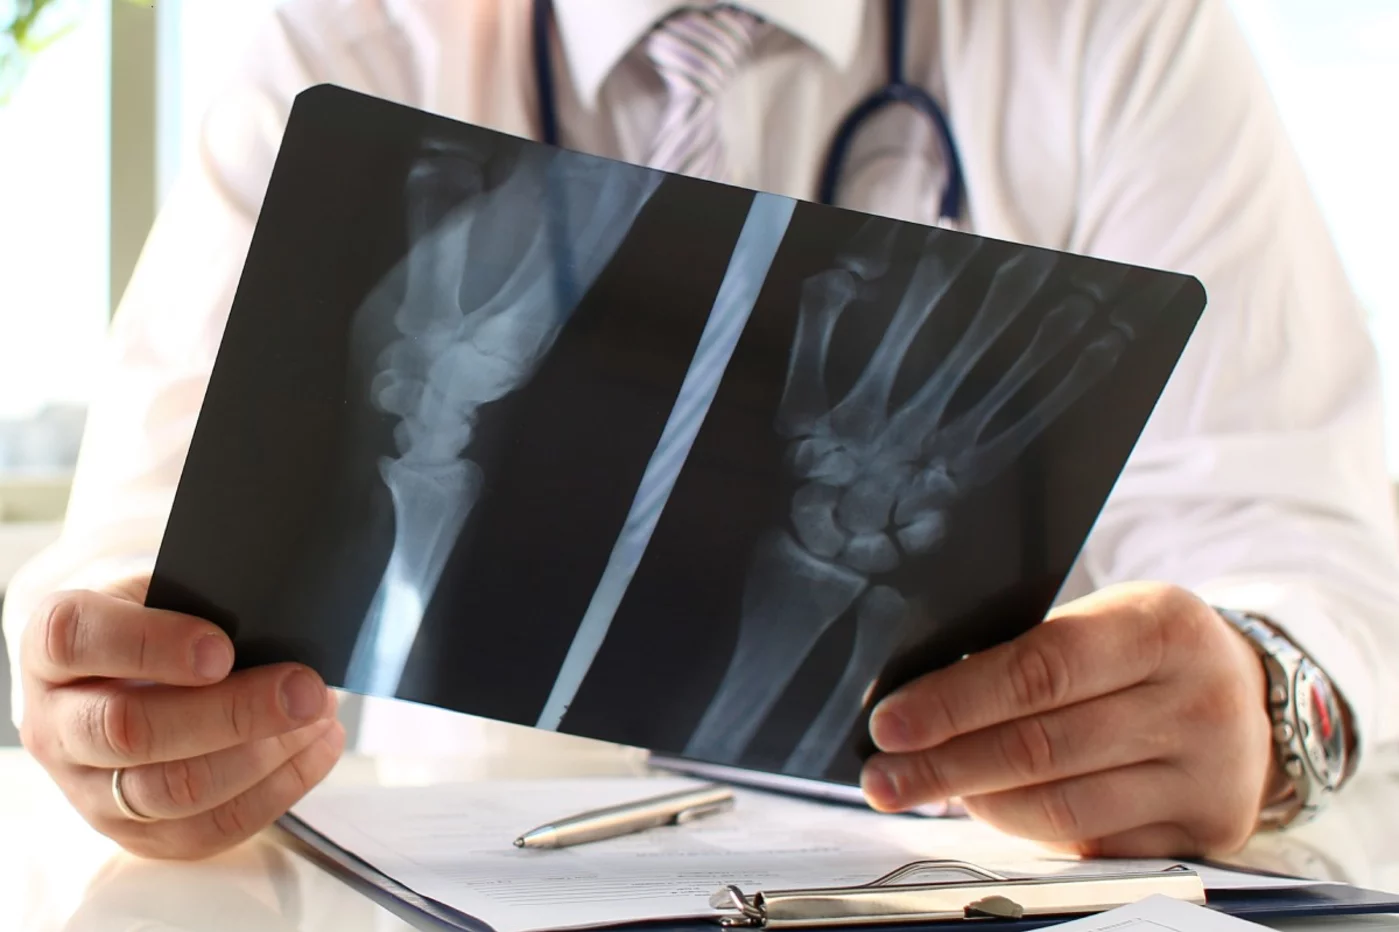 Niveles bajos de densidad ósea suelen conllevar mayor riesgo de fracturas. Foto: DM. 